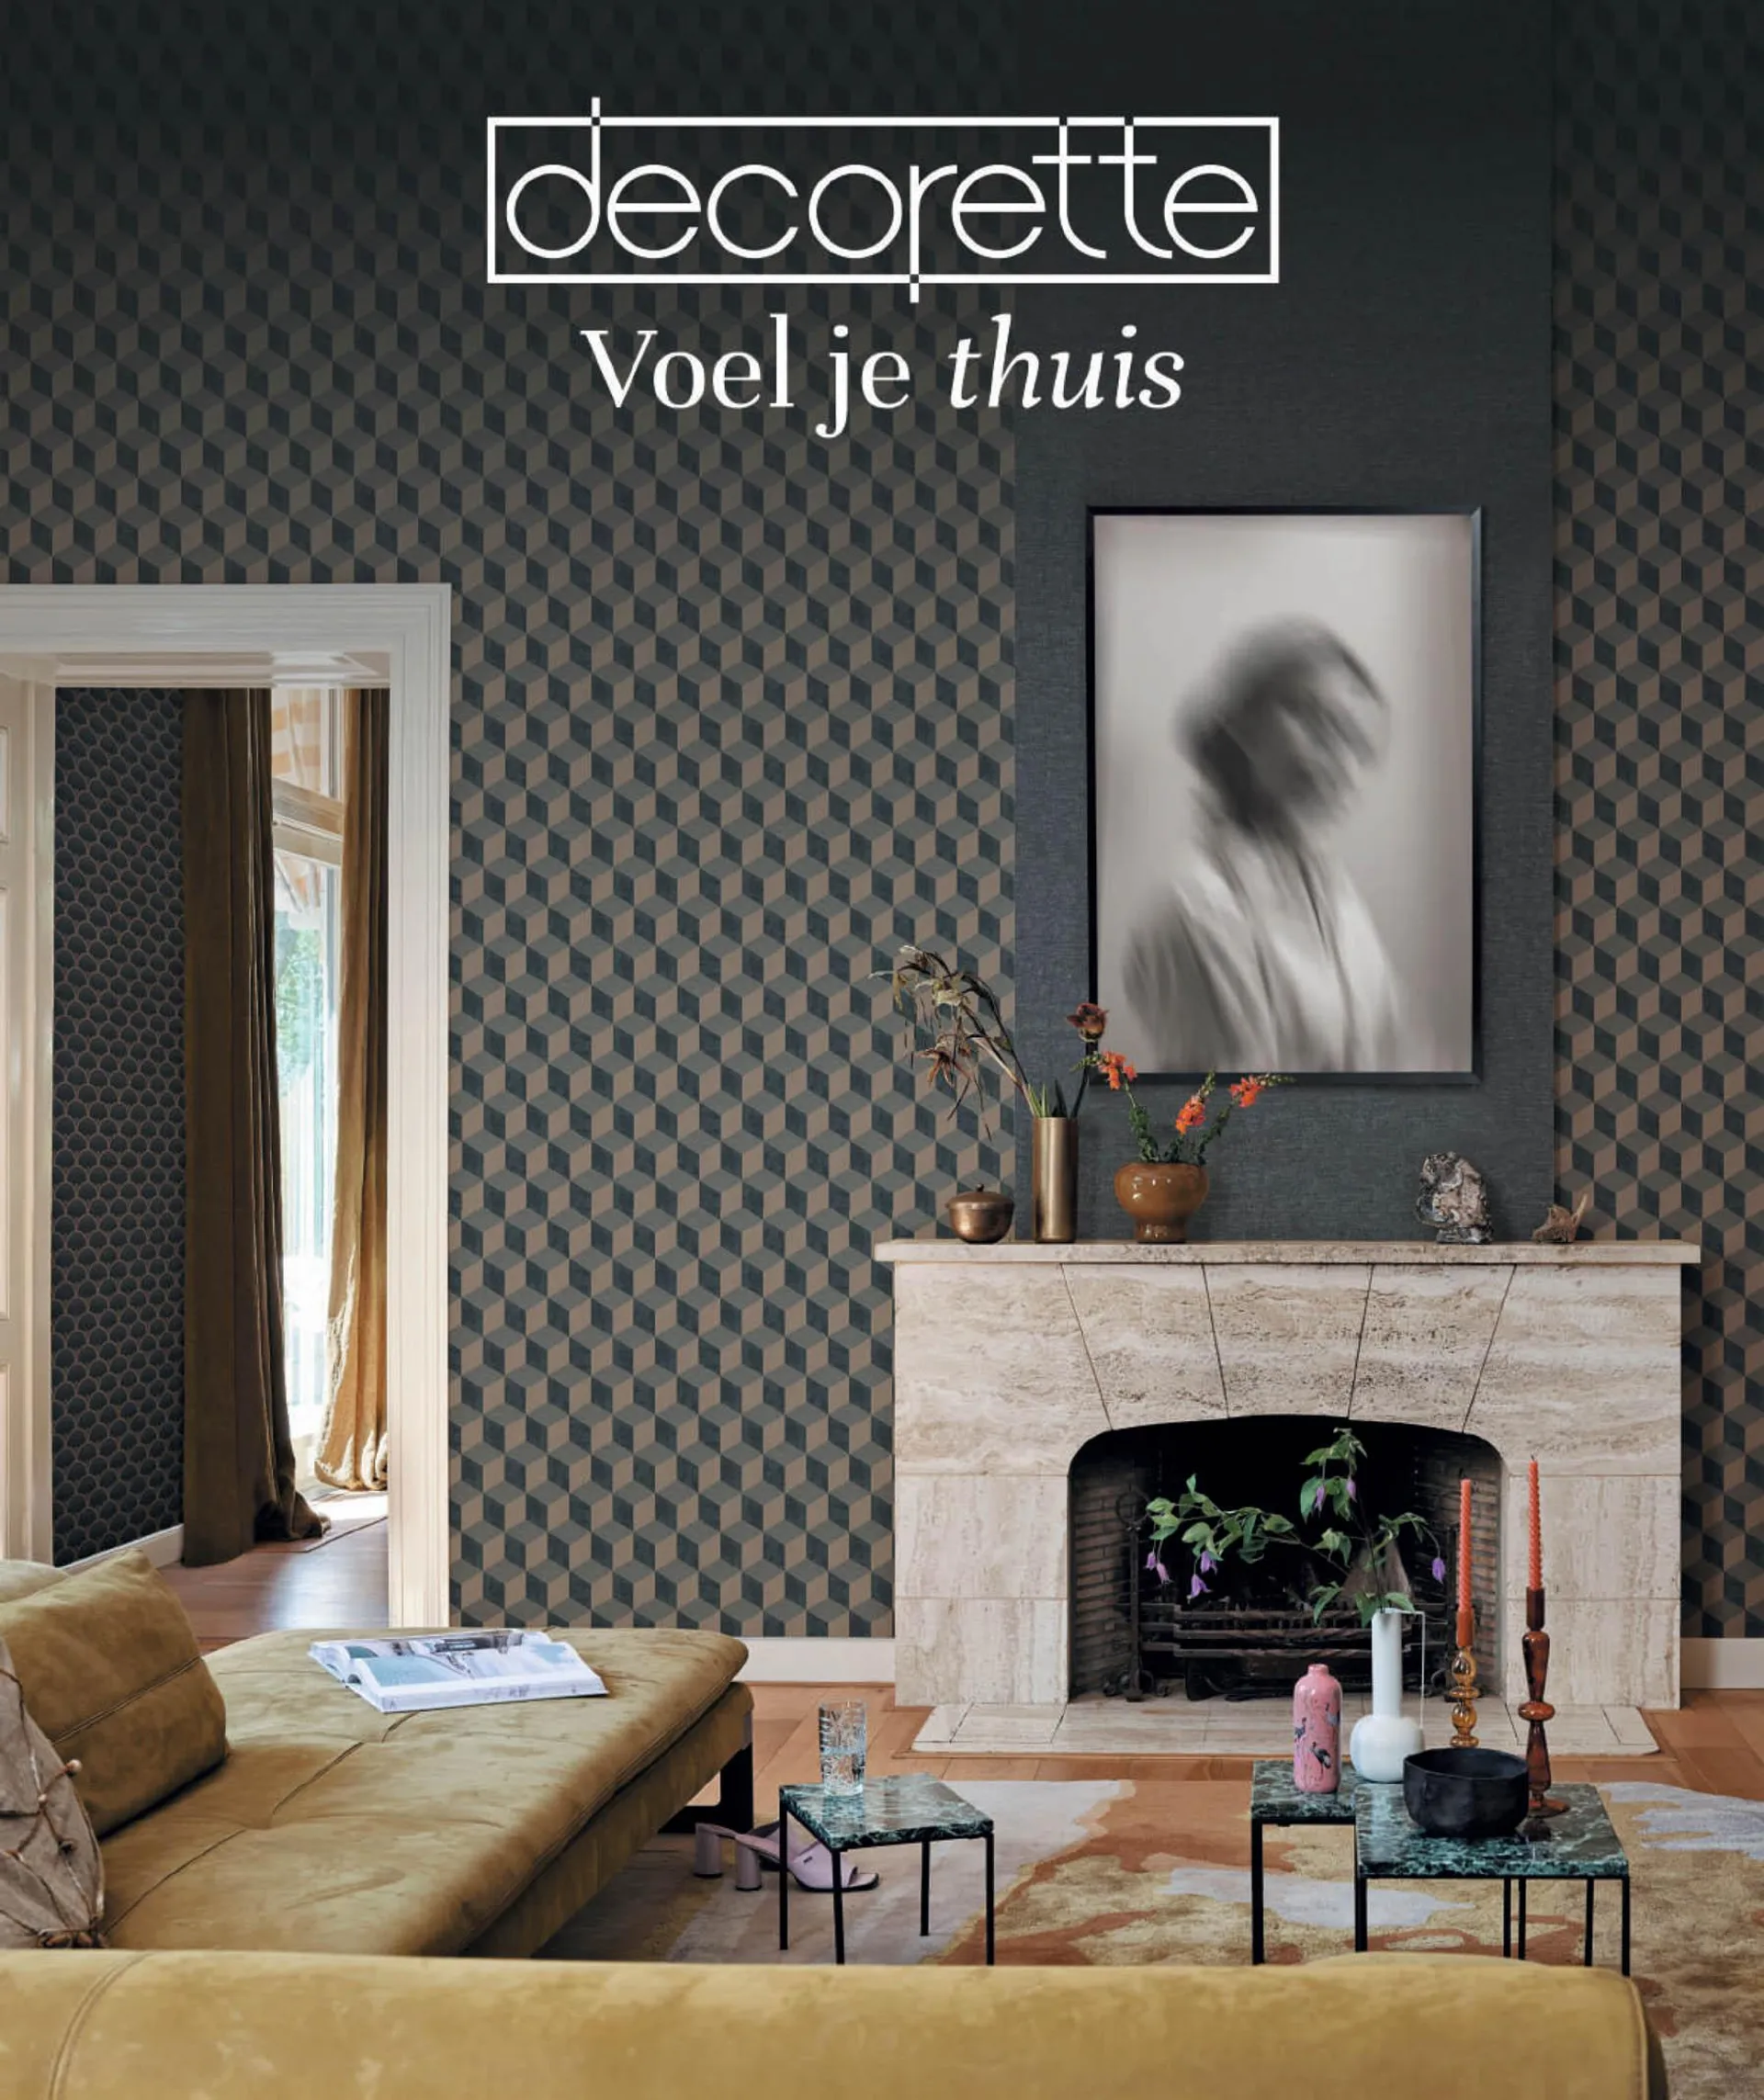 Decorette Magazine - 1